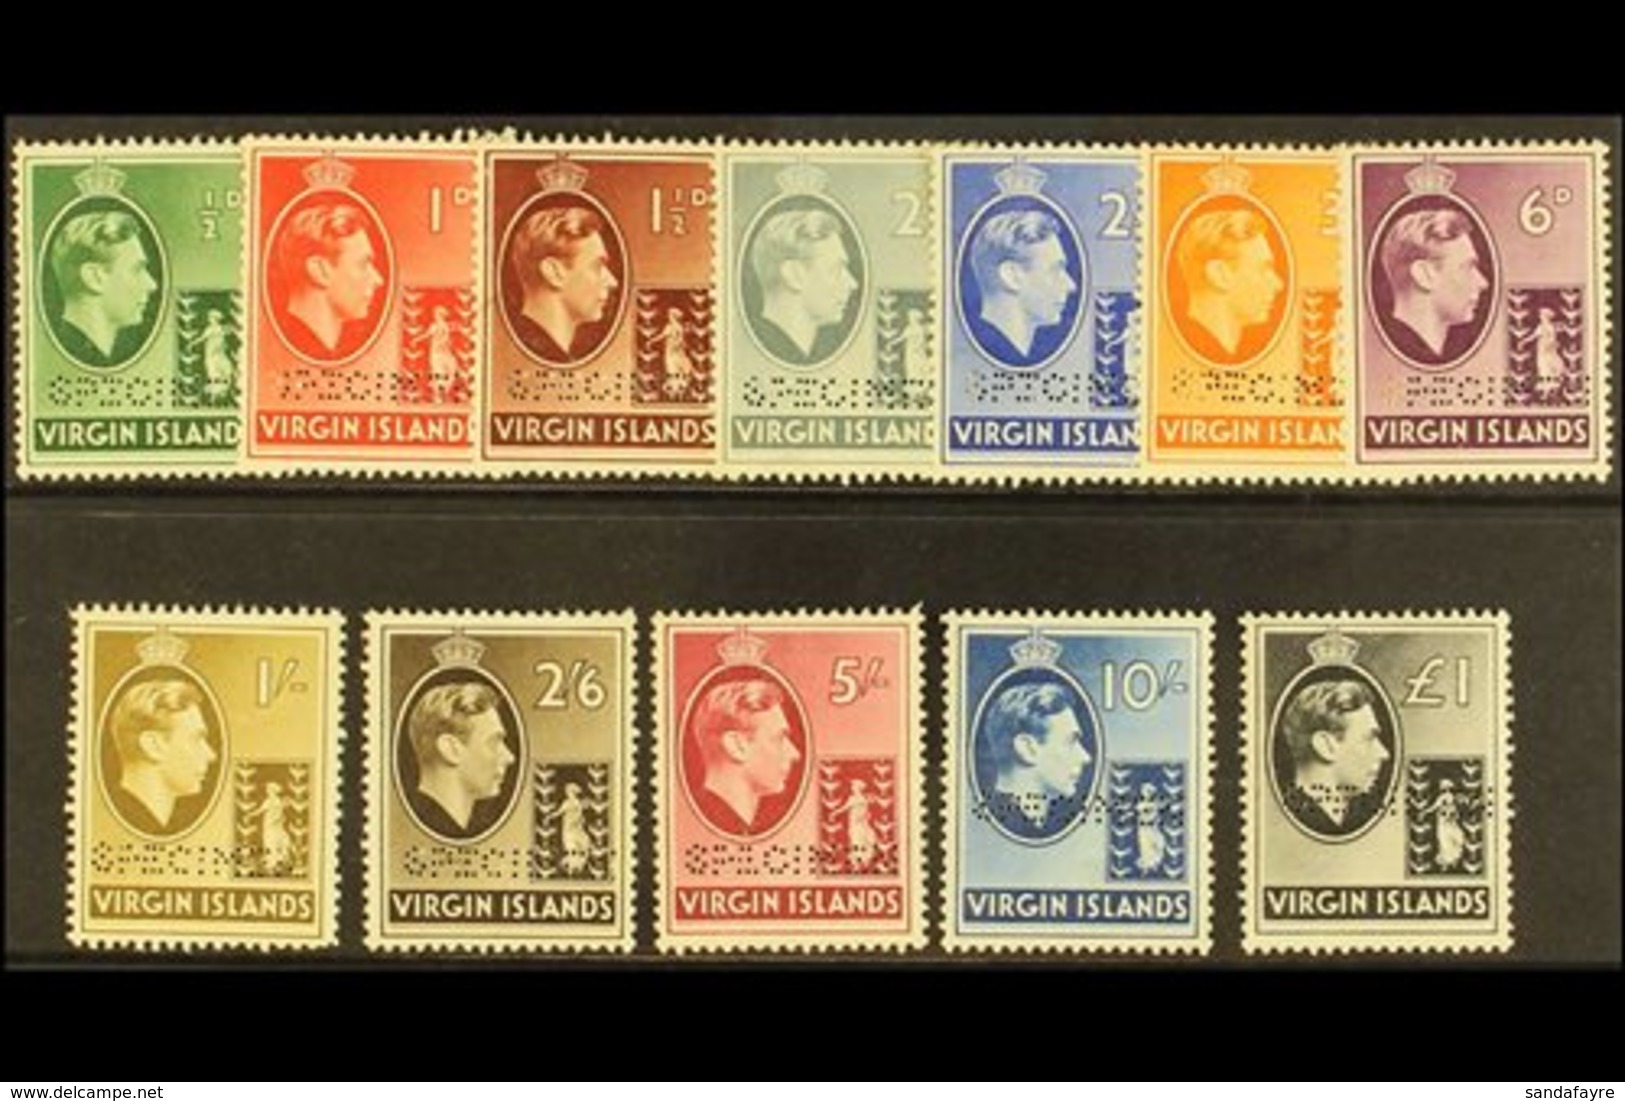 1938  Geo VI Set Complete, Perforated "Specimen", SG 110s/121s, Very Fine Mint, Part Og. (12 Stamps) For More Images, Pl - British Virgin Islands